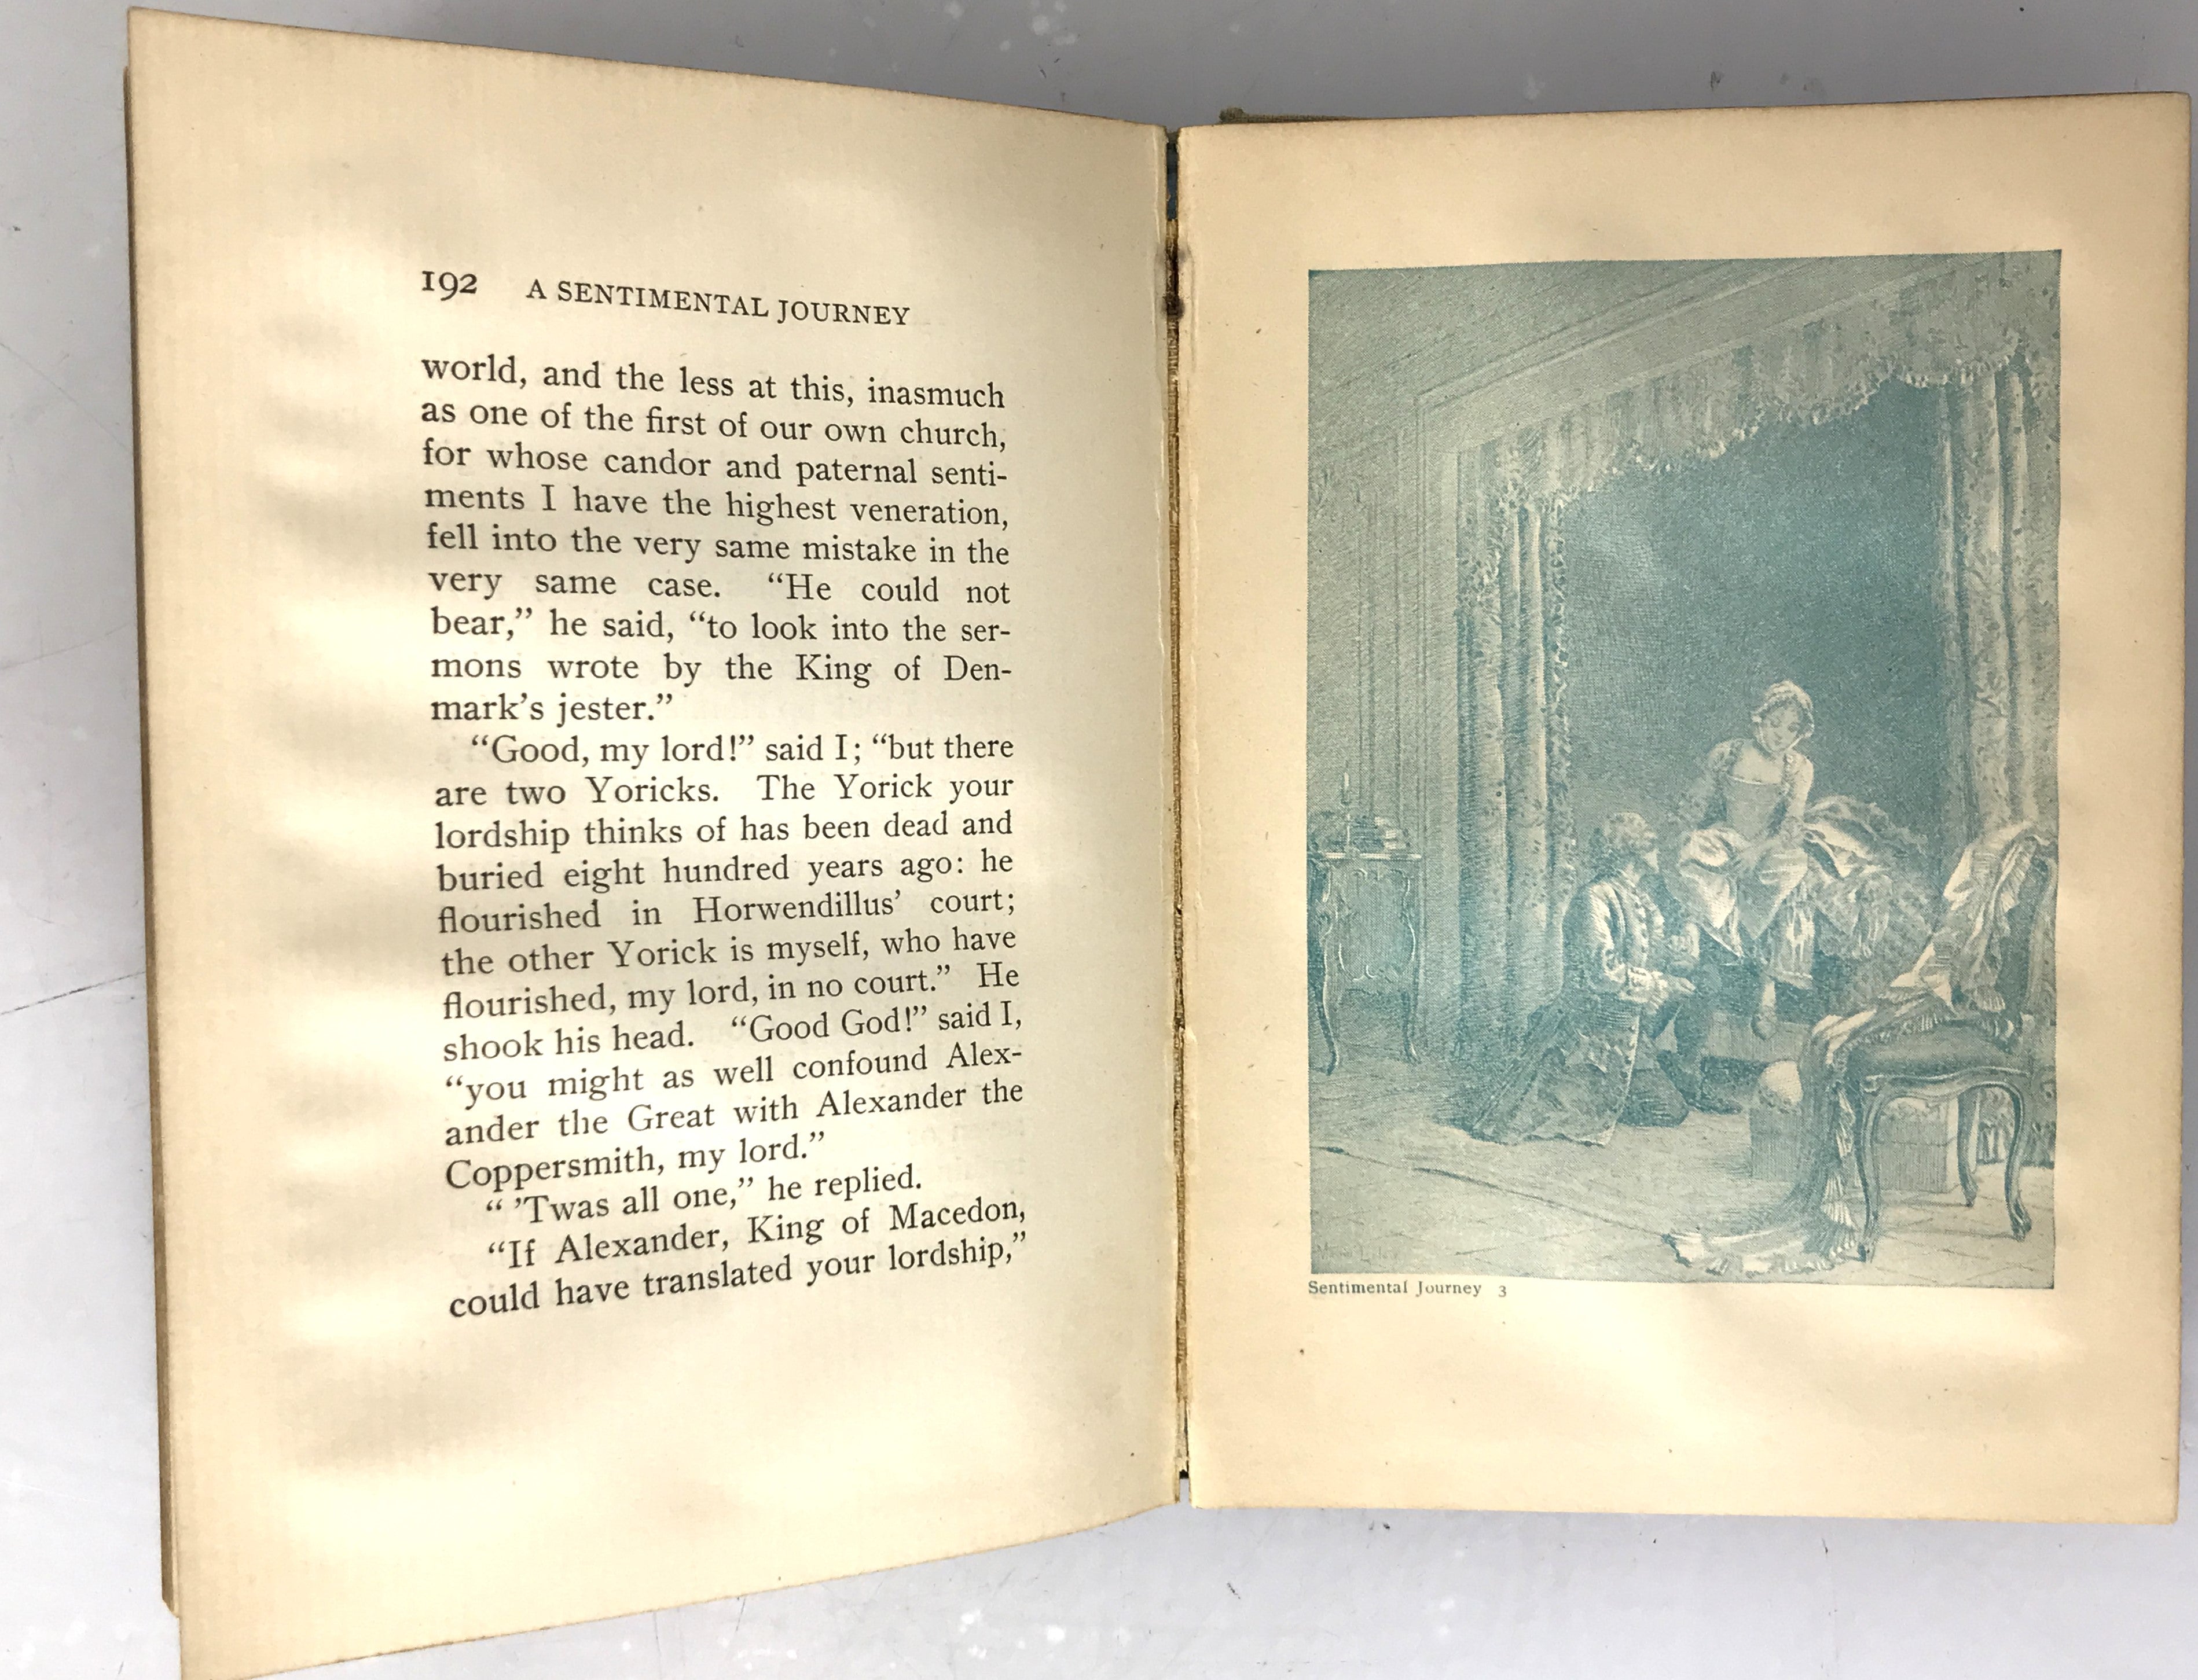 Laurence Sterne A Sentimental Journey (c1890s) Henry Altemus of Philadelphia HC